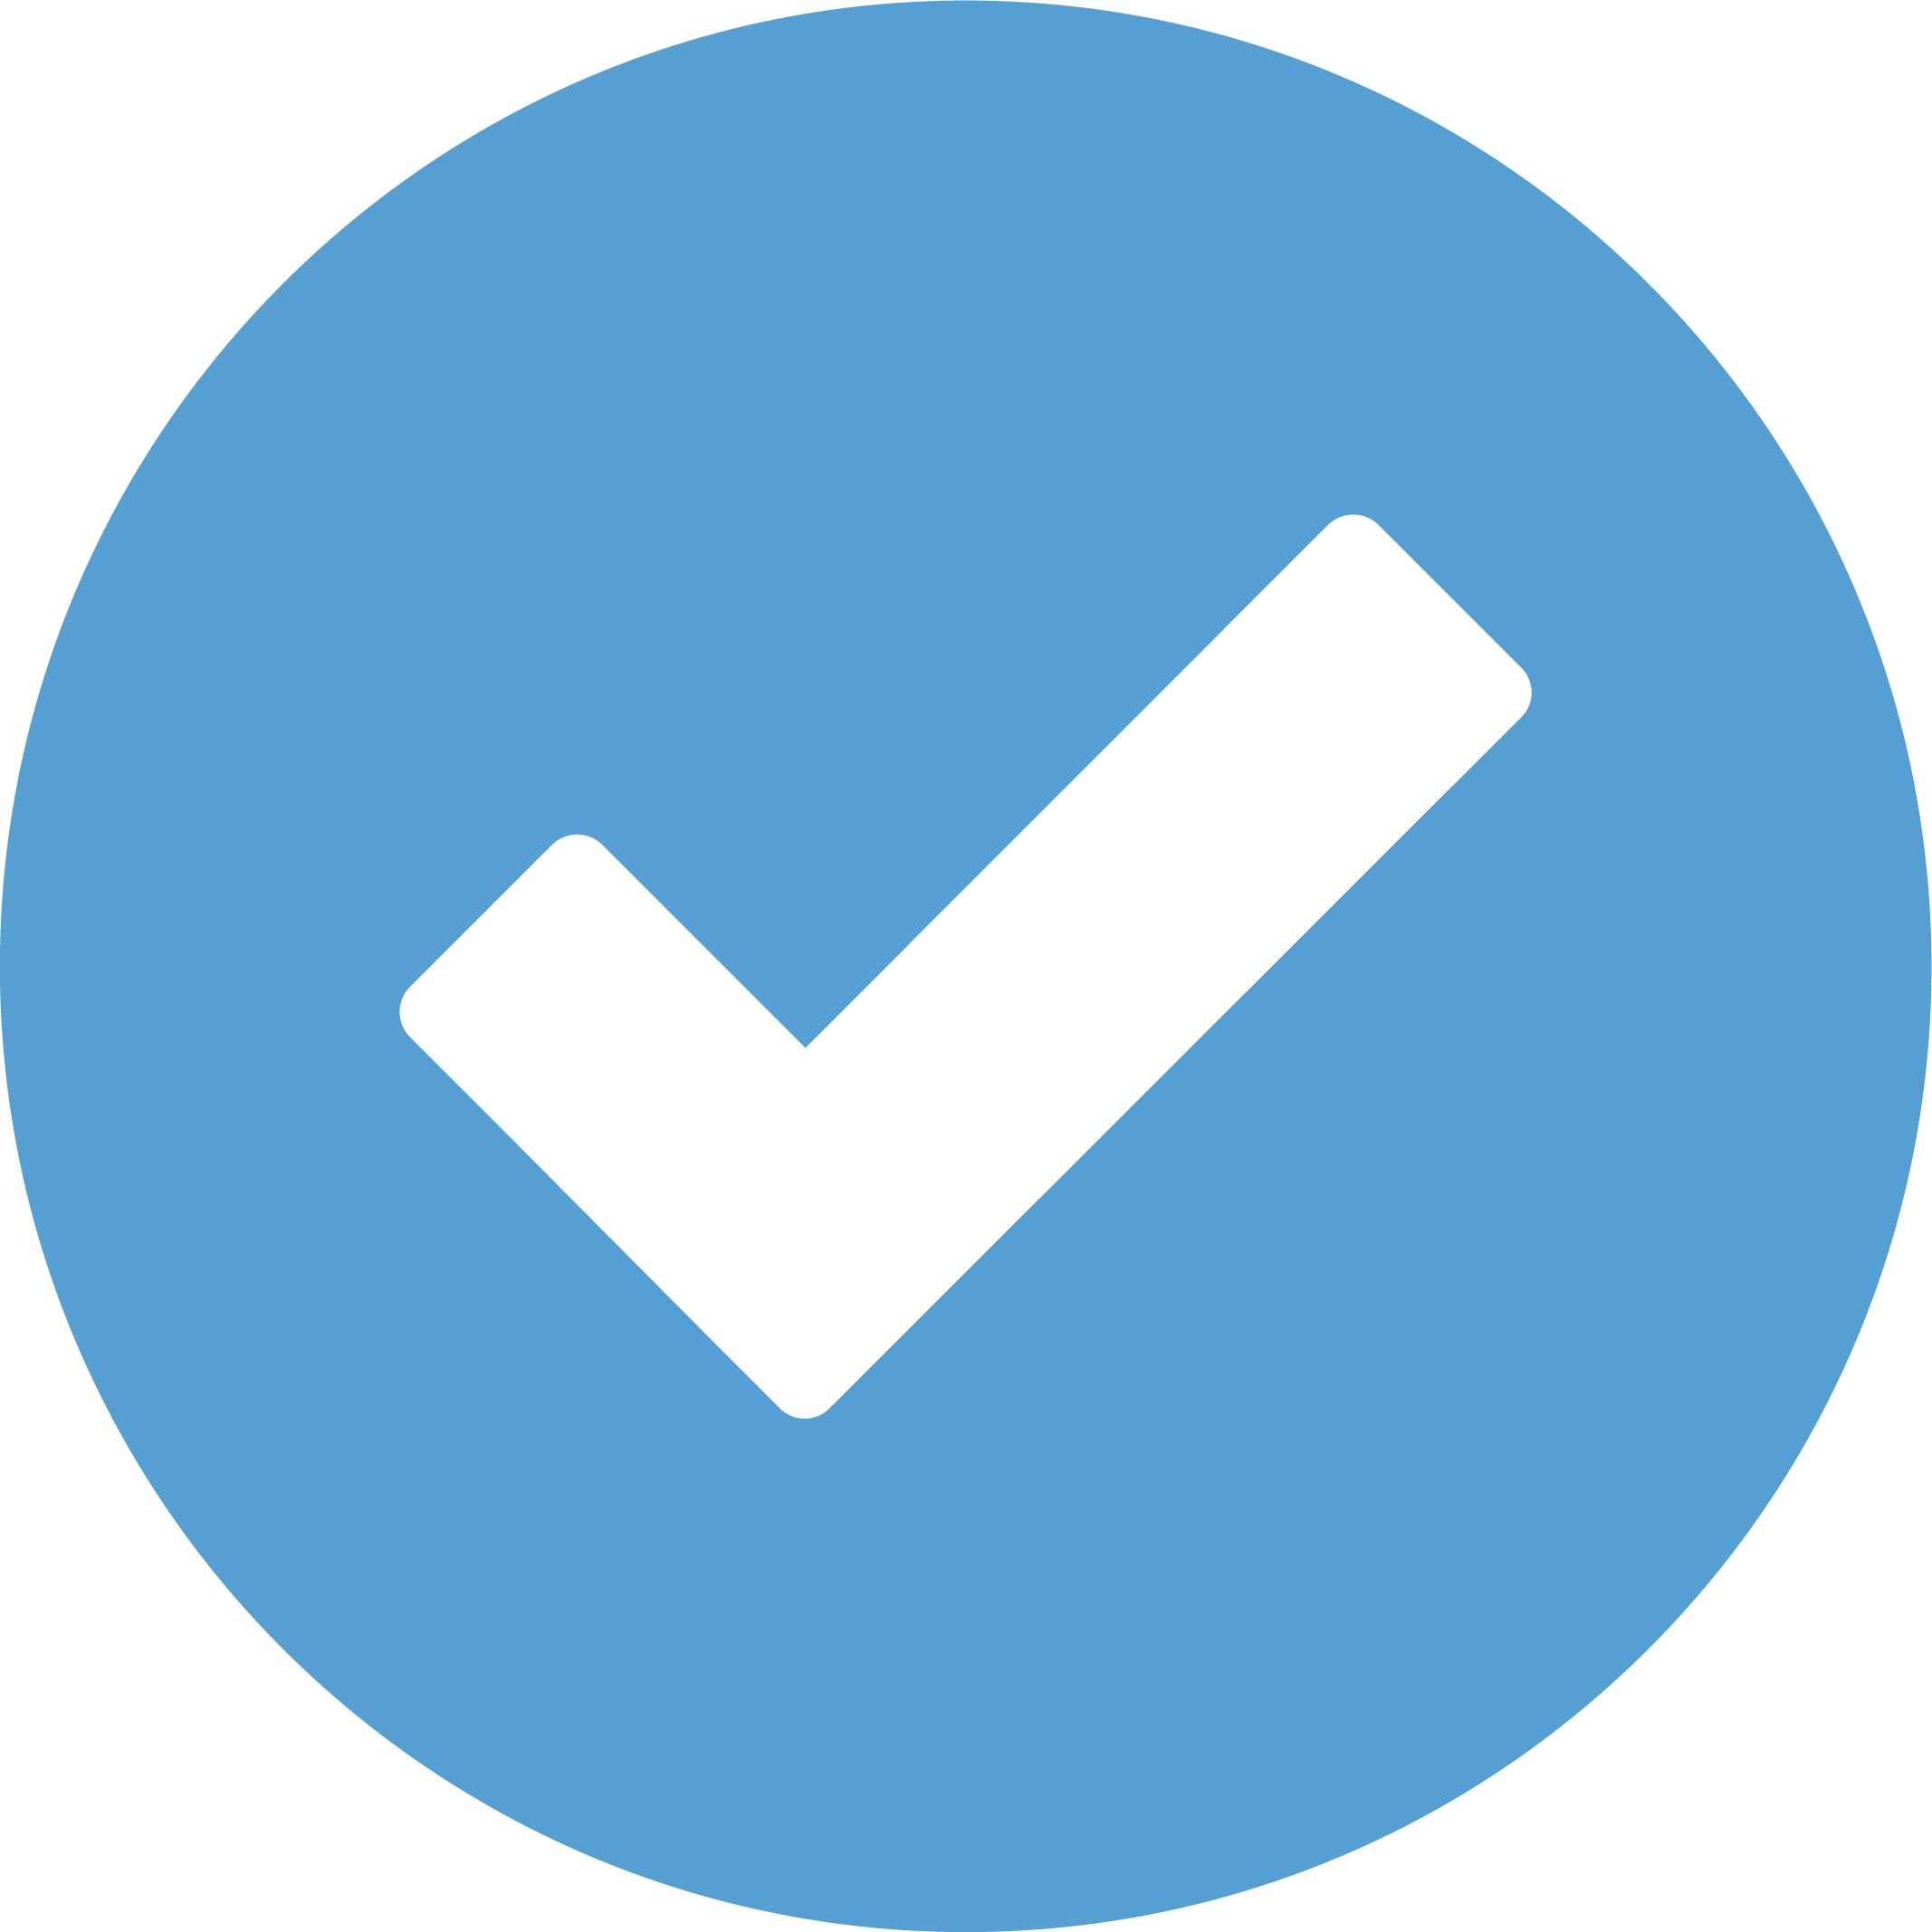 Blue check mark icon<br />
